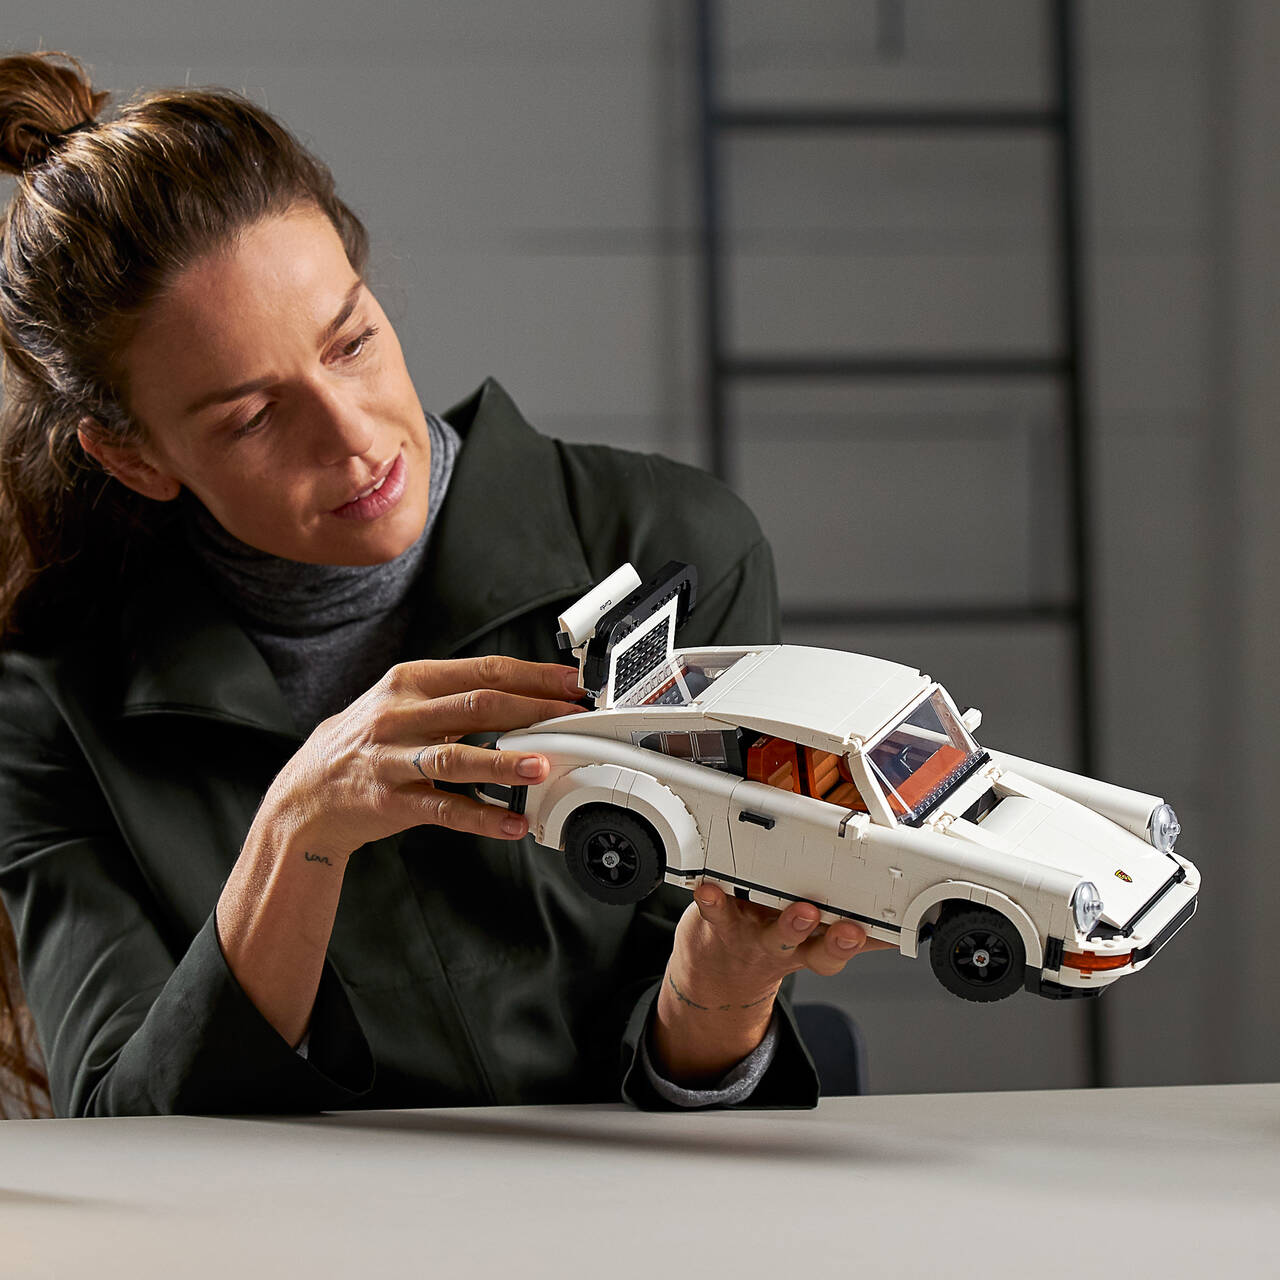 FOR ENTUSIASTEN: Lego kommer med et Porsche 911-byggesett. Foto: Produsenten